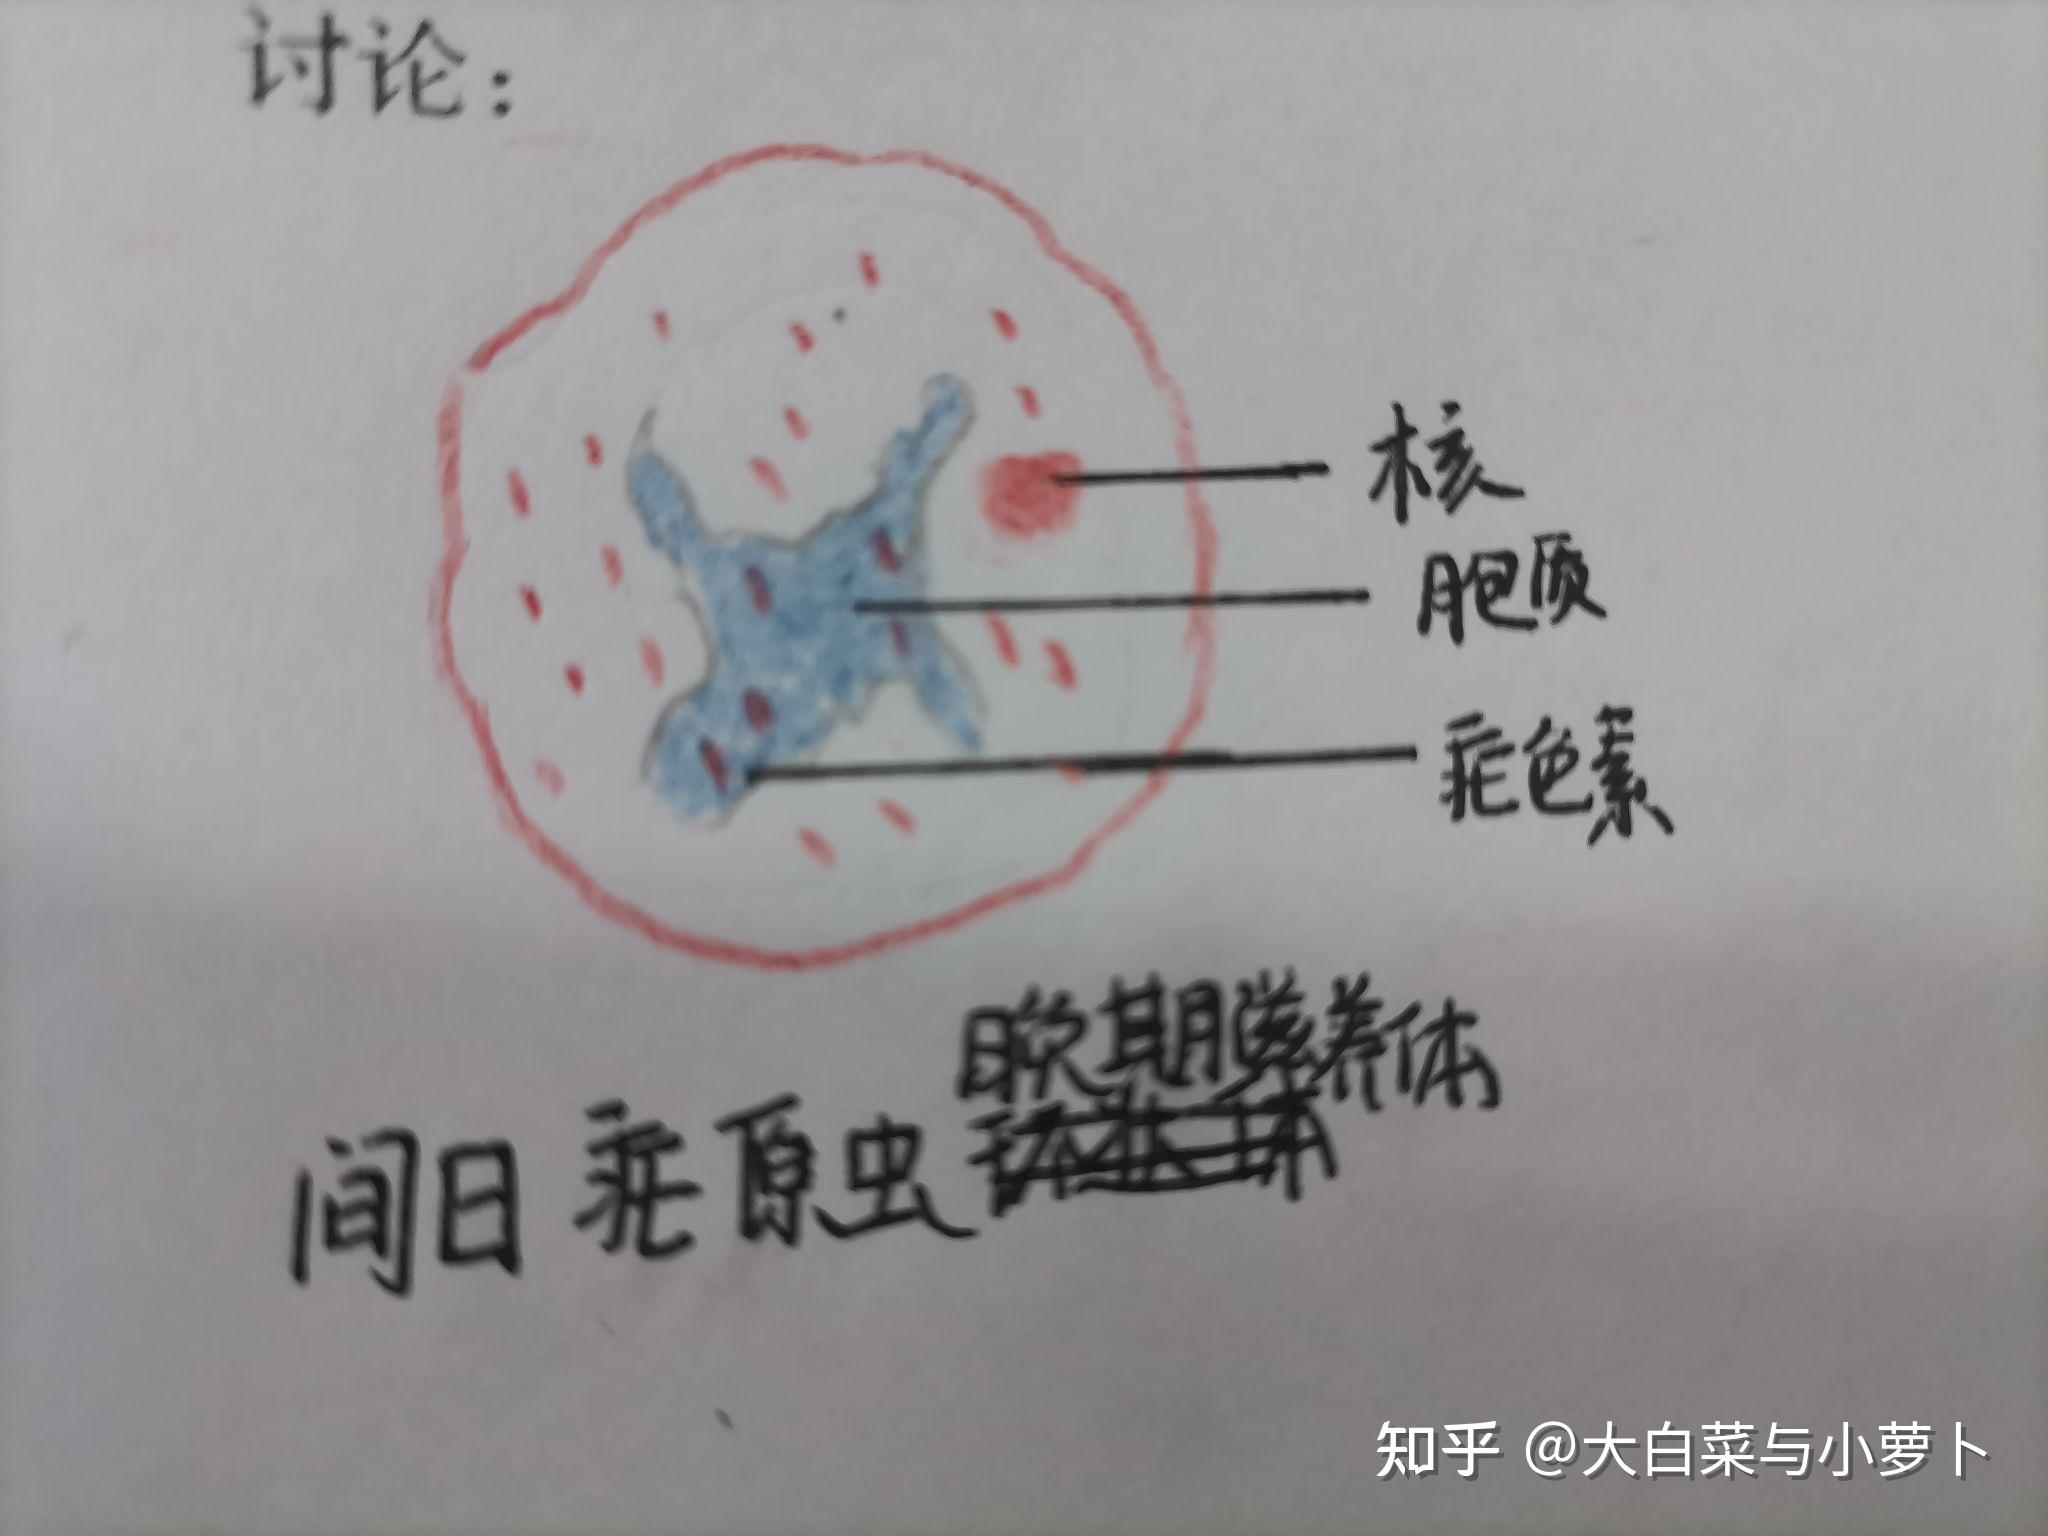 疟原虫红蓝铅笔图图片